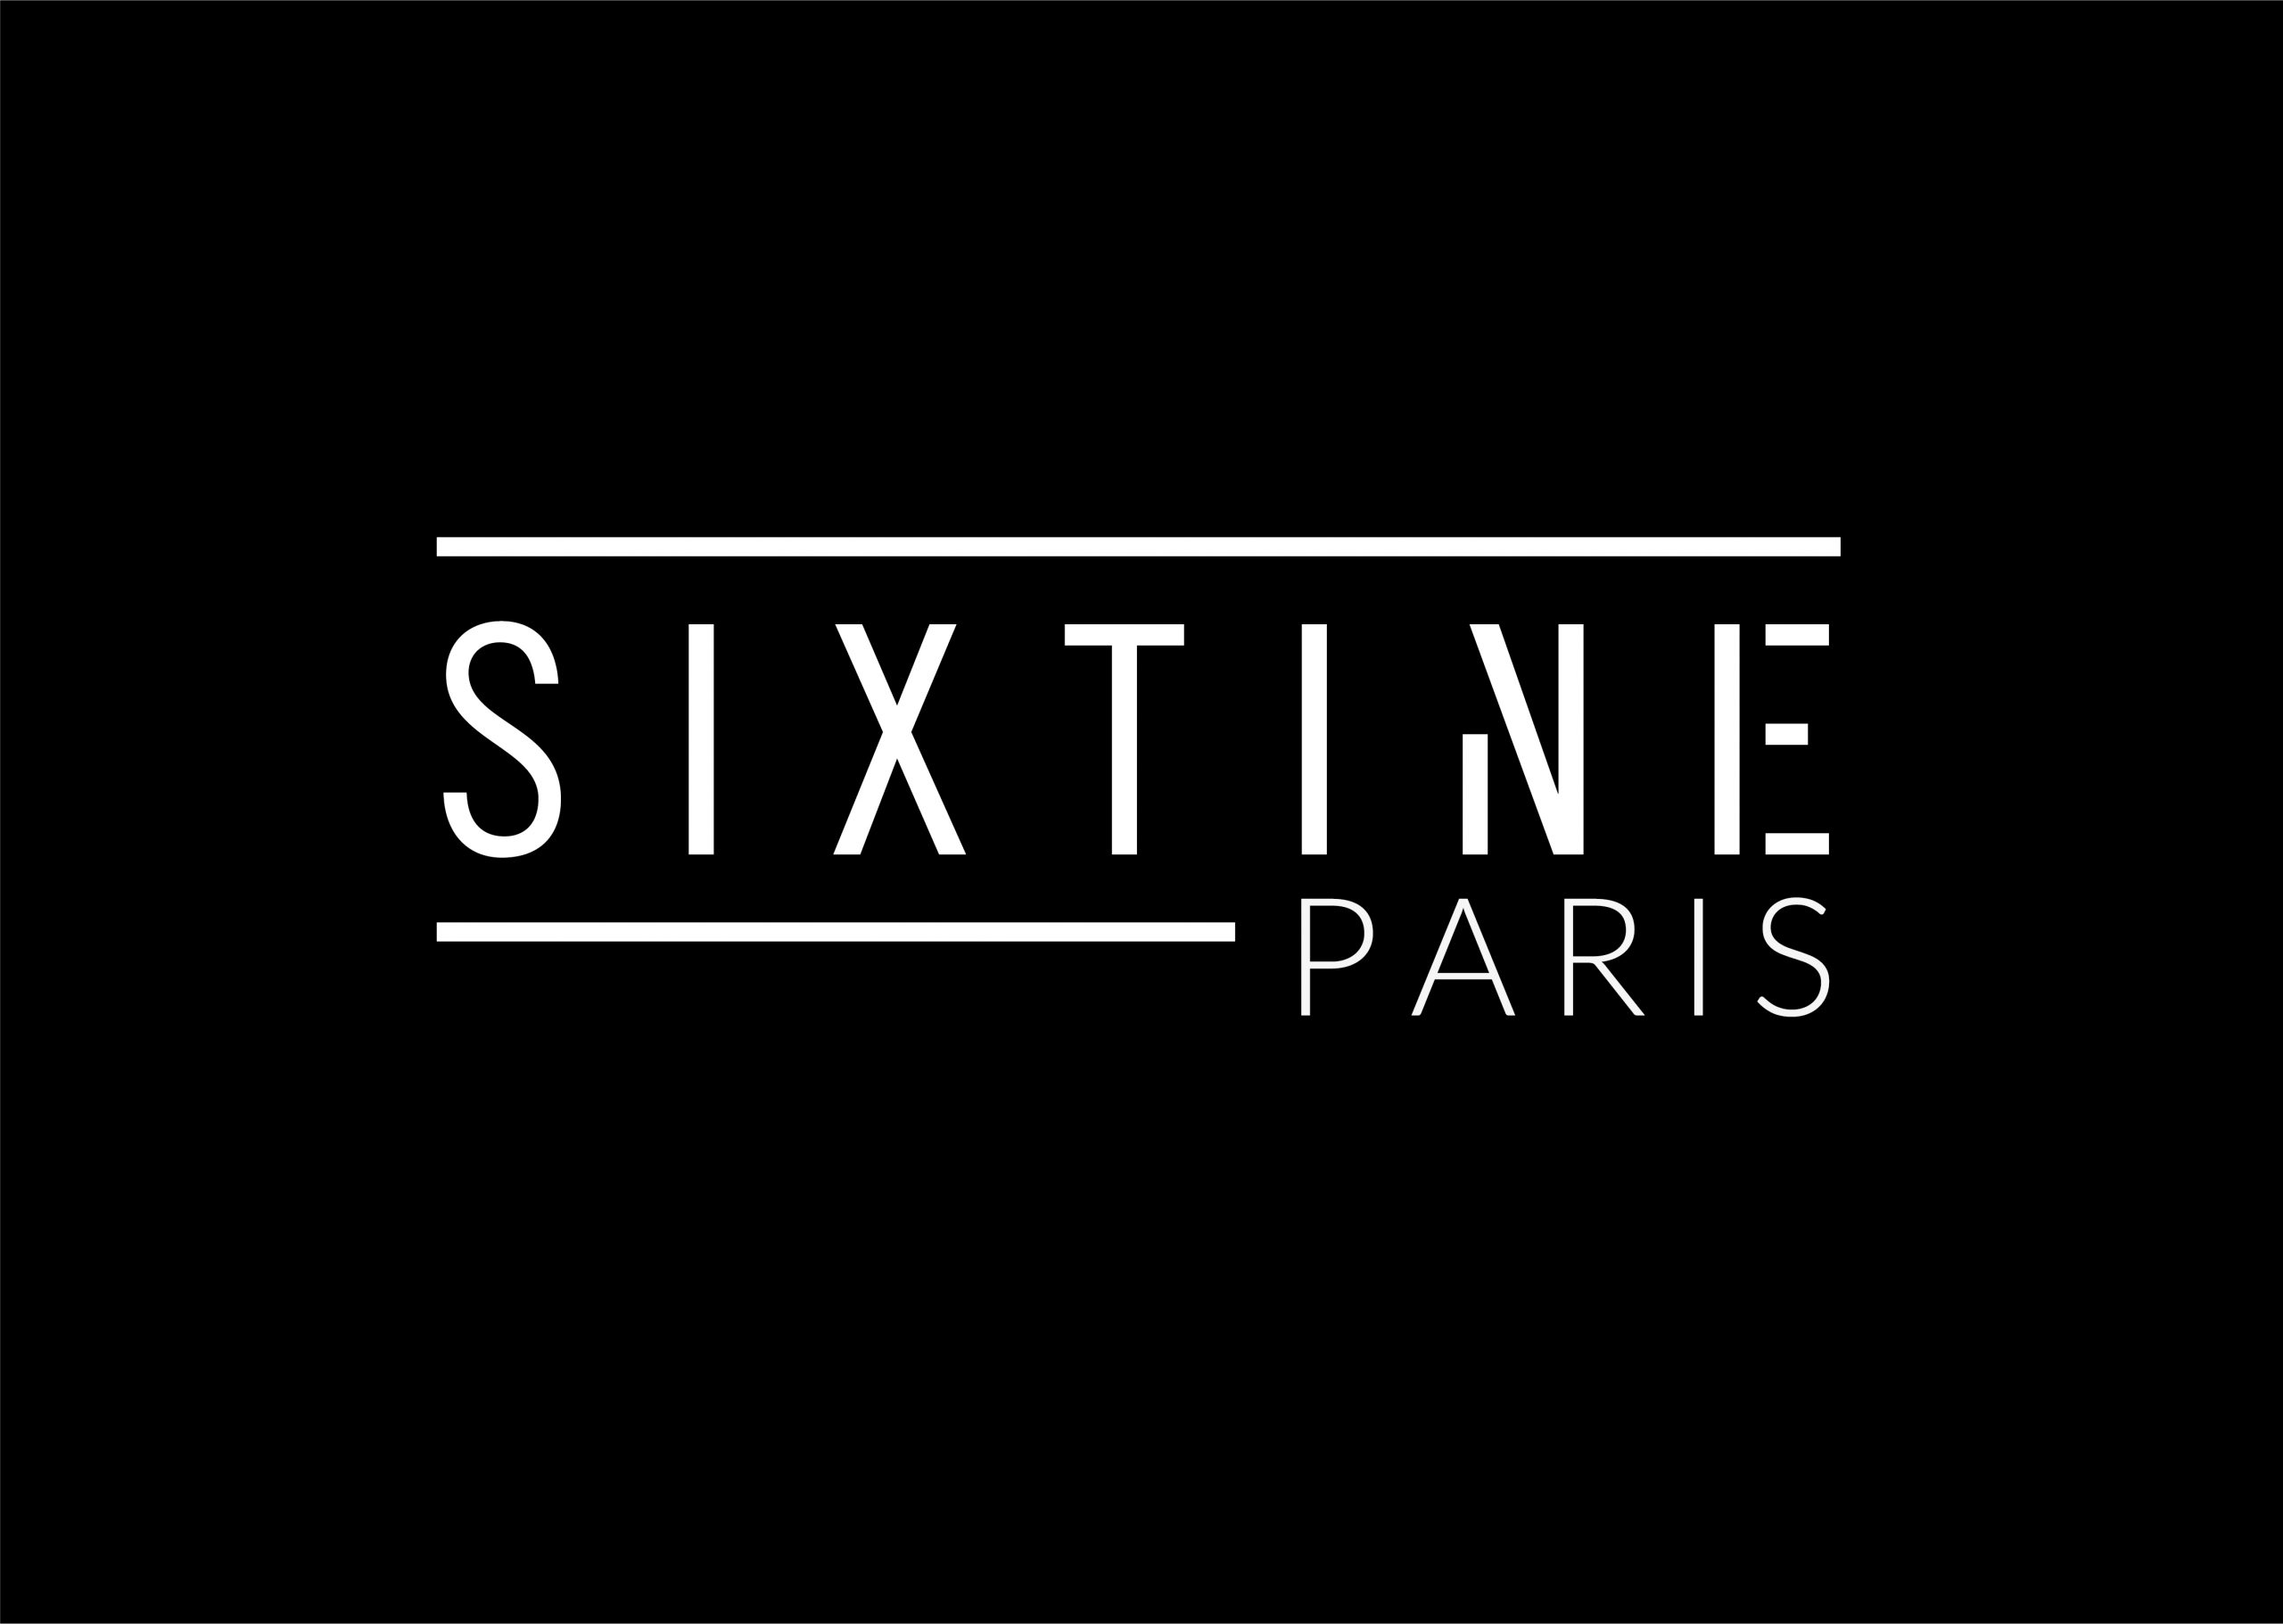 Icone de Sixtine Paris 